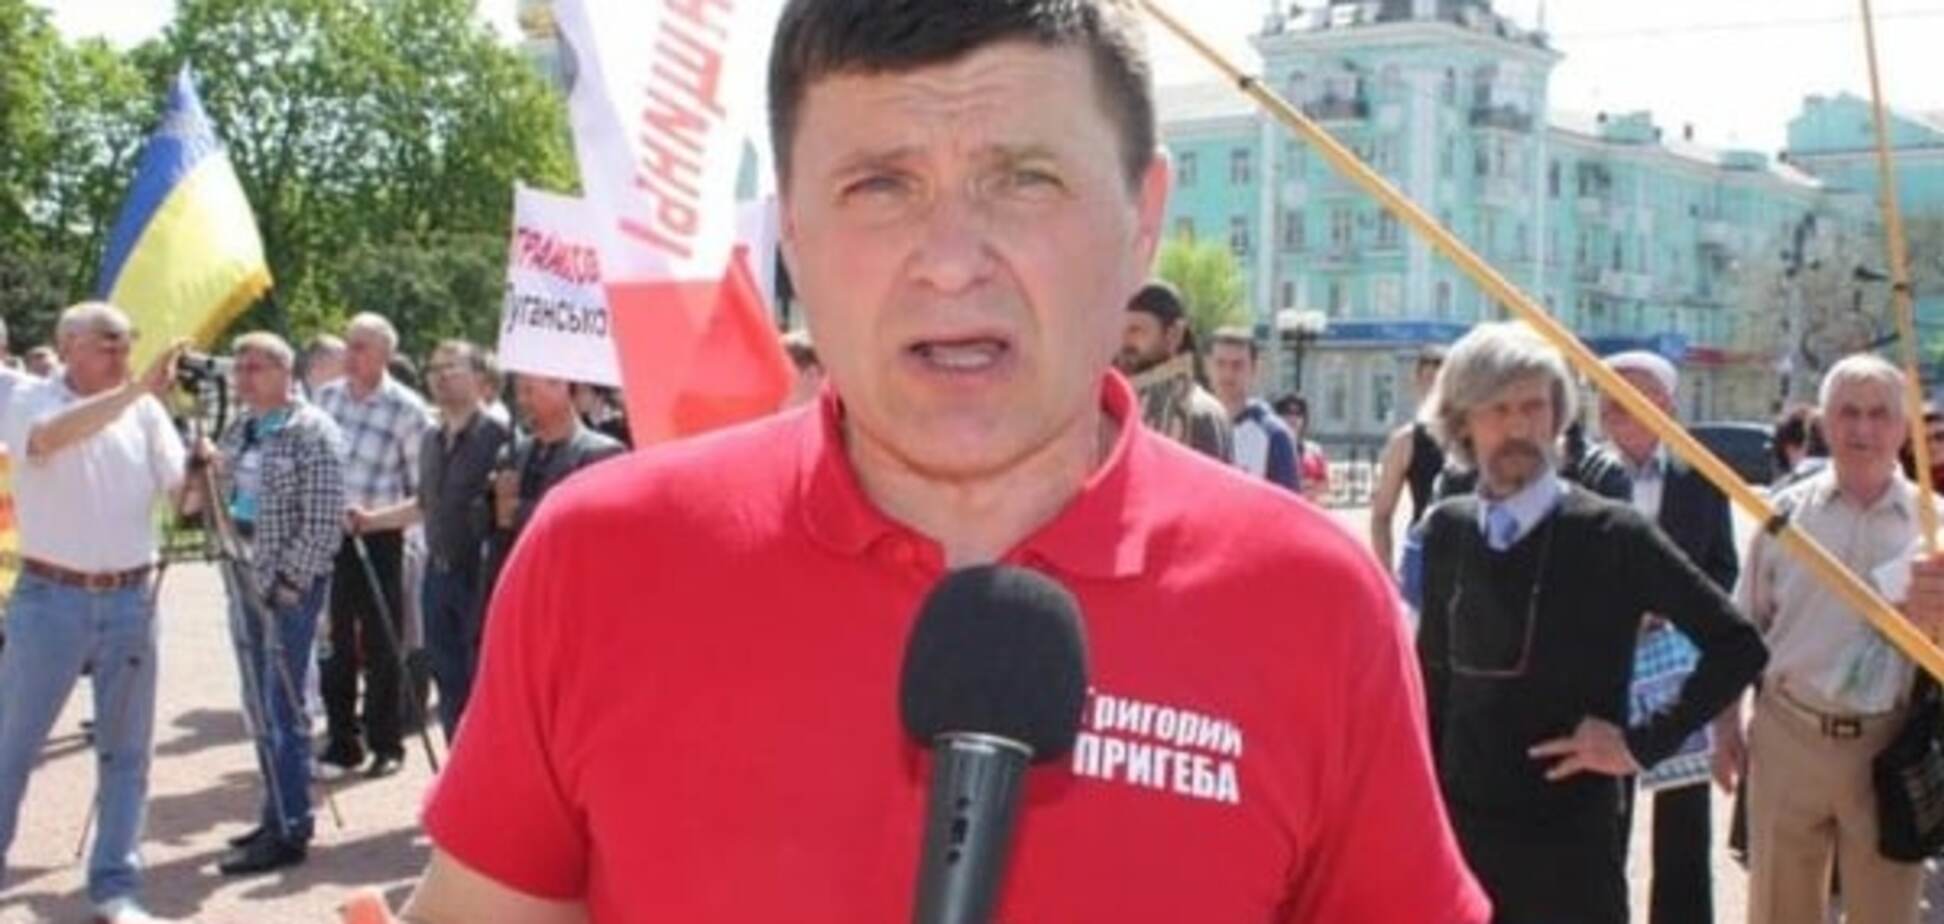 Скандальный луганский политик будет руководить Северодонецком